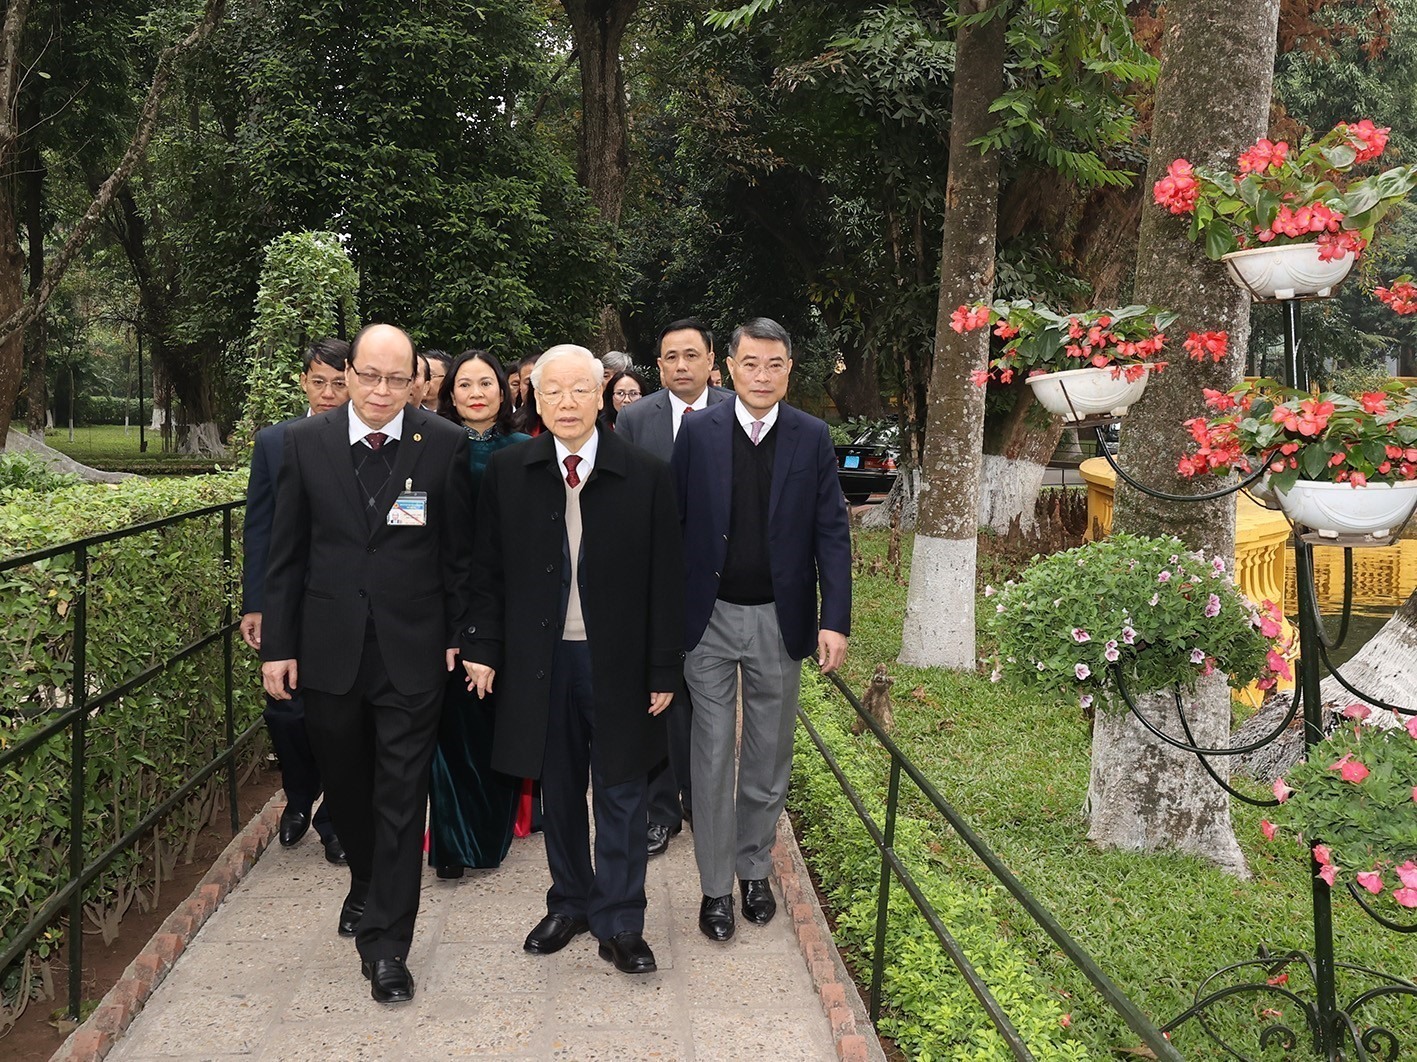 Tổng Bí thư Nguyễn Phú Trọng thăm nơi ở và làm việc của Chủ tịch Hồ Chí Minh ở Phủ Chủ tịch. Ảnh: Trí Dũng